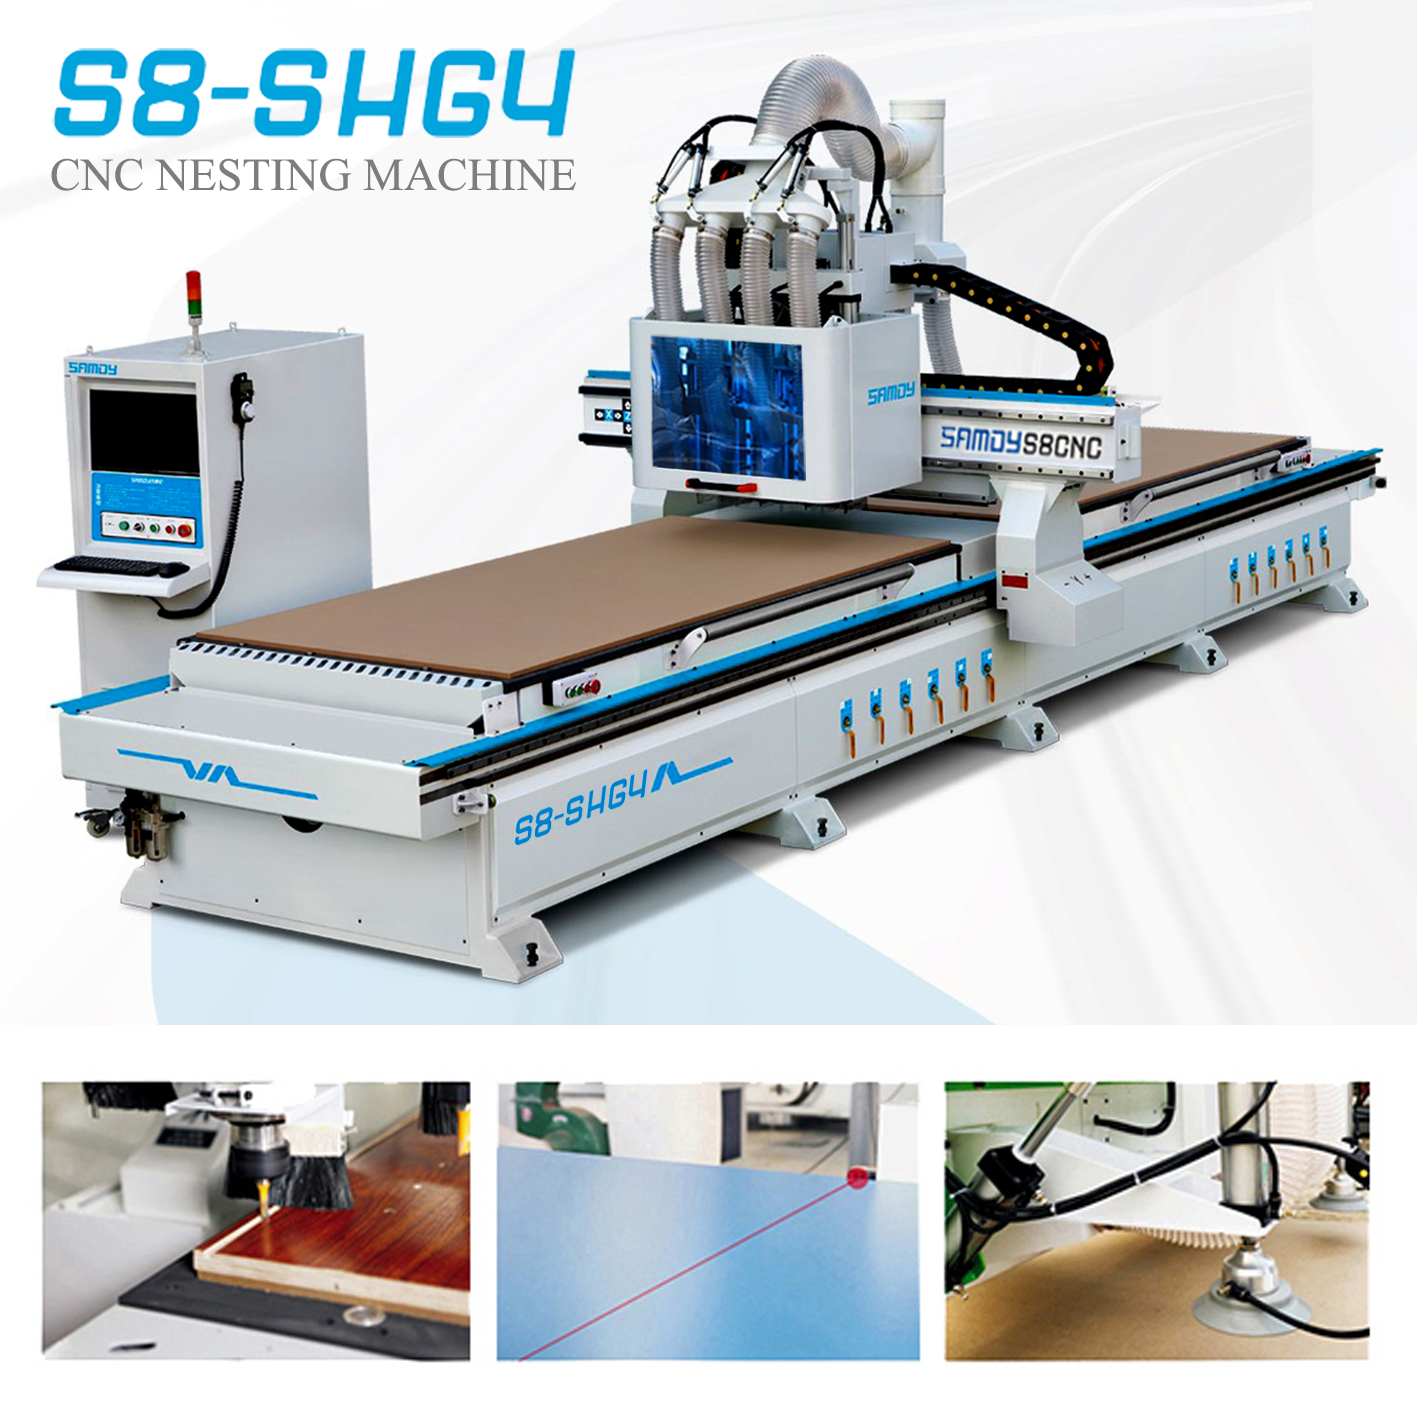 CNC Nesting S8 - SHG4